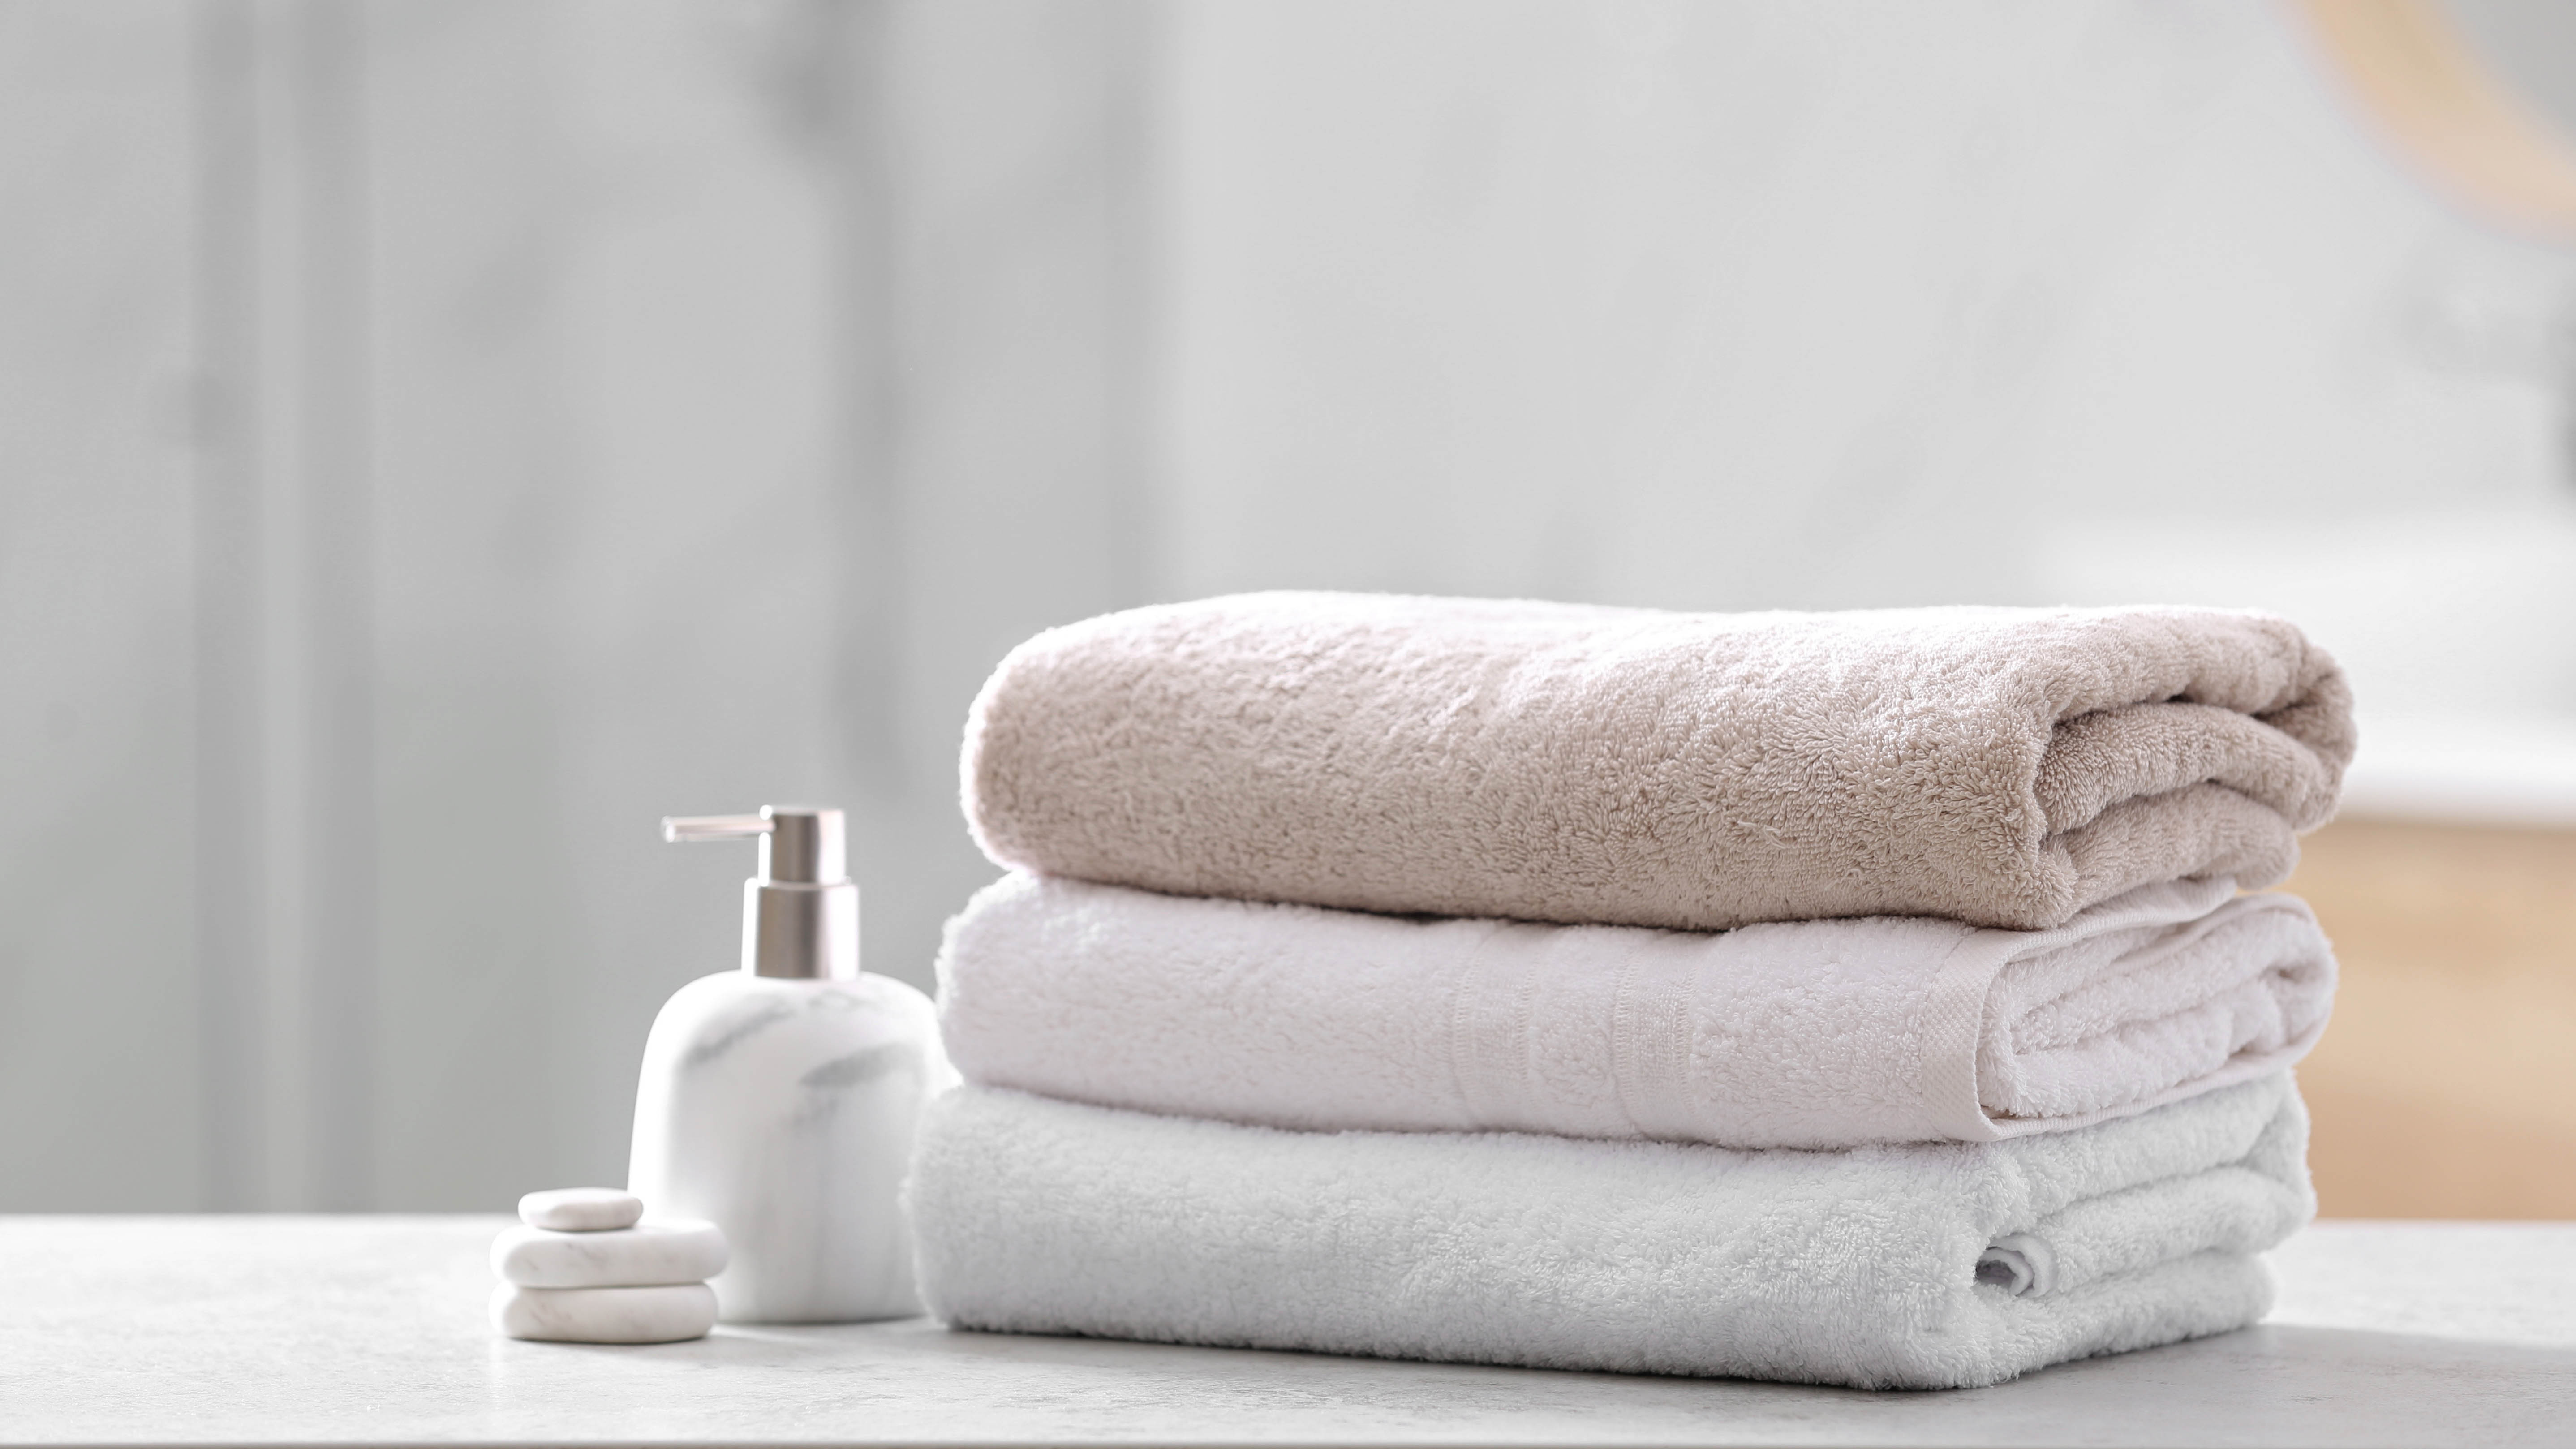 Три полотенца сложены друг на друга рядом с дозатором мыла.